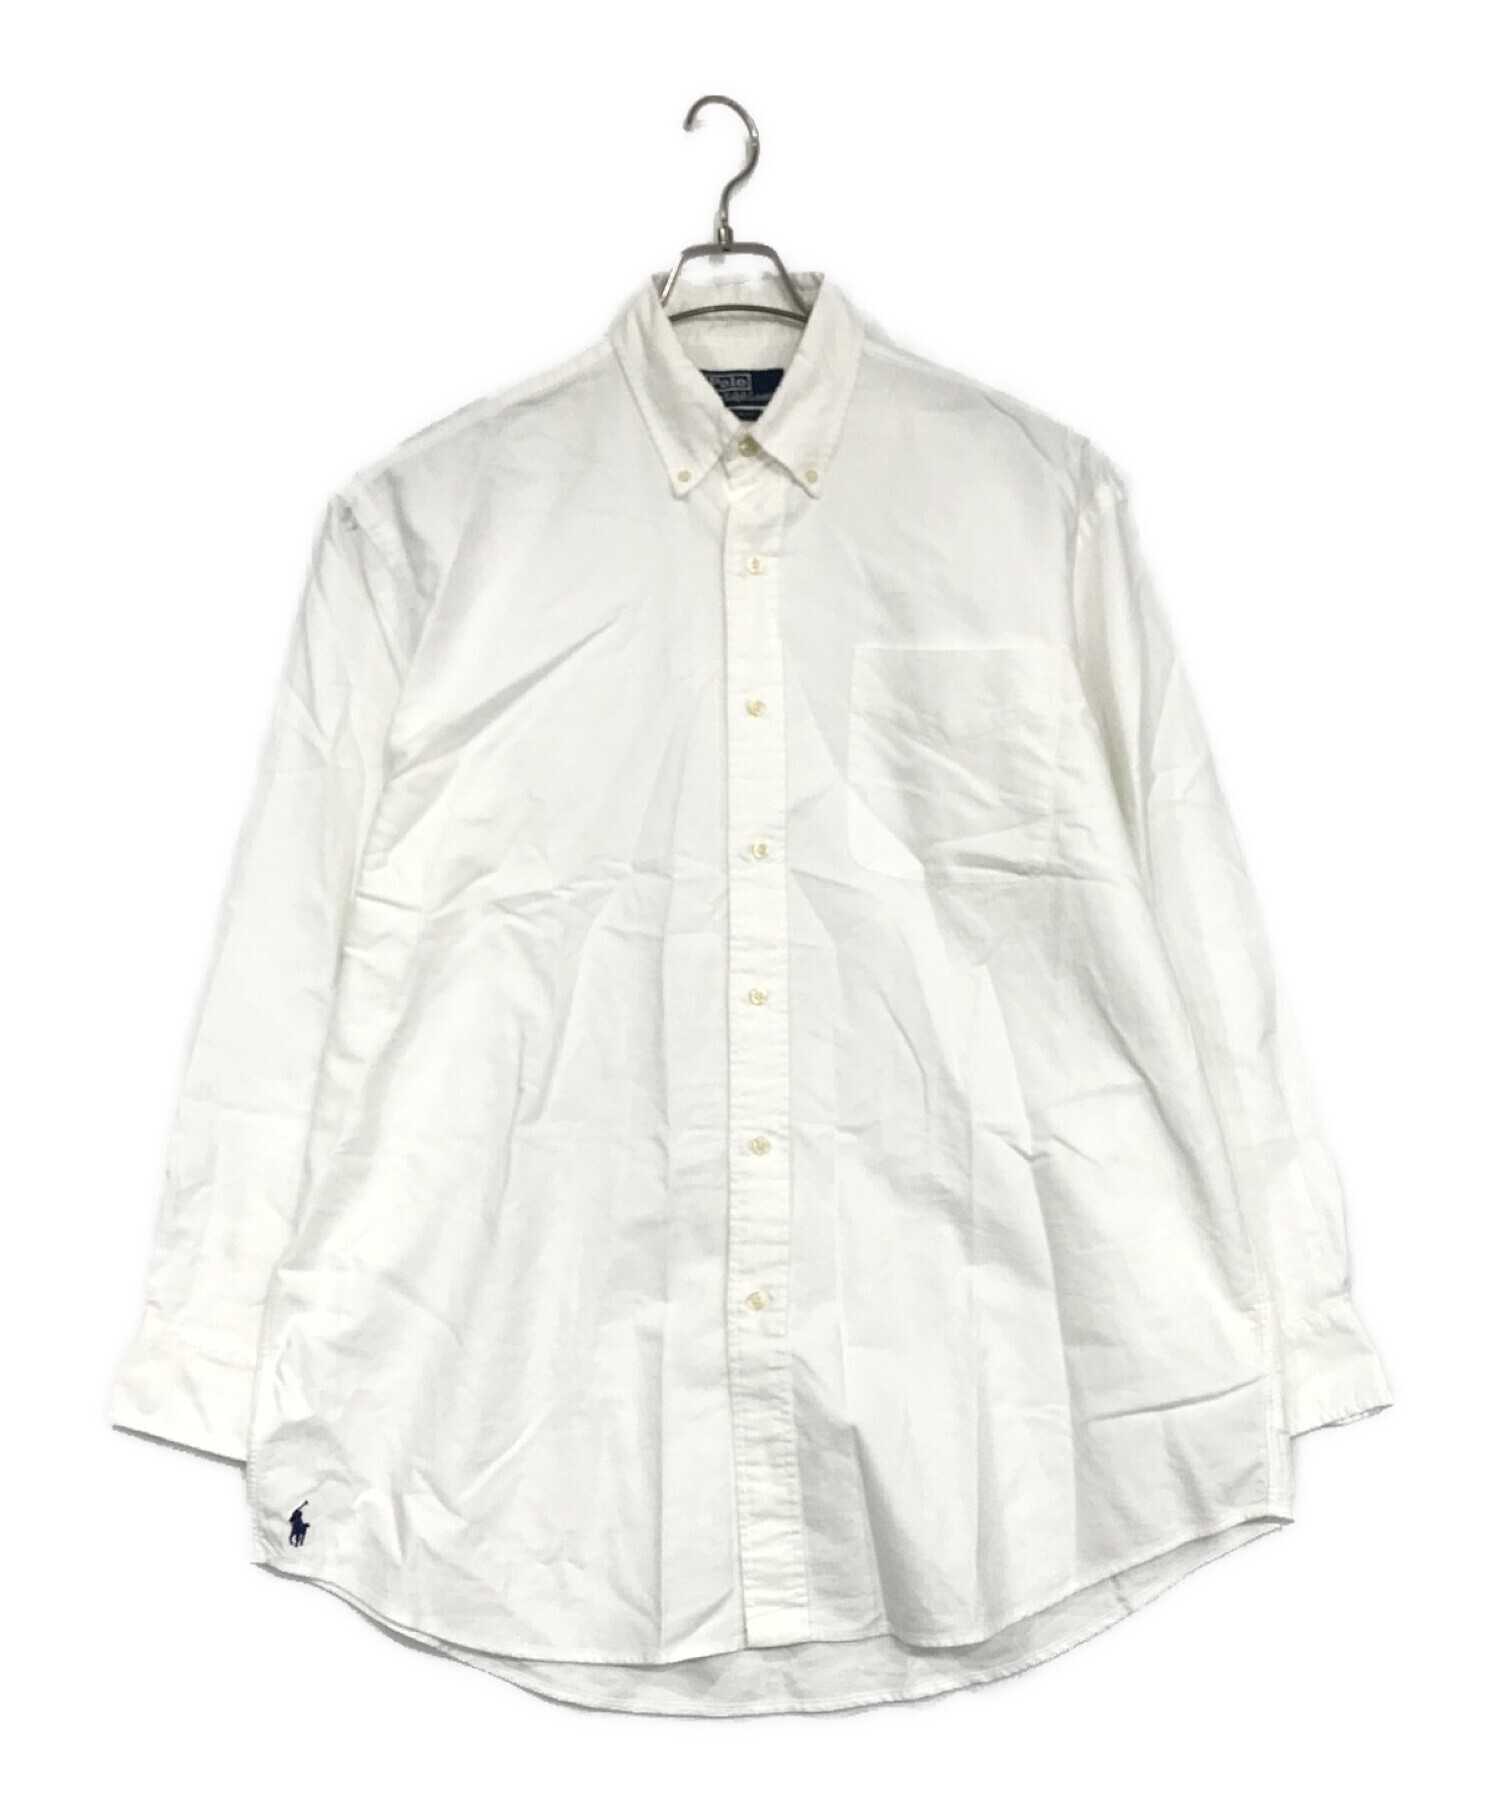 POLO RALPH LAUREN (ポロ・ラルフローレン) ボタンダウンシャツ ホワイト サイズ:SIZE M